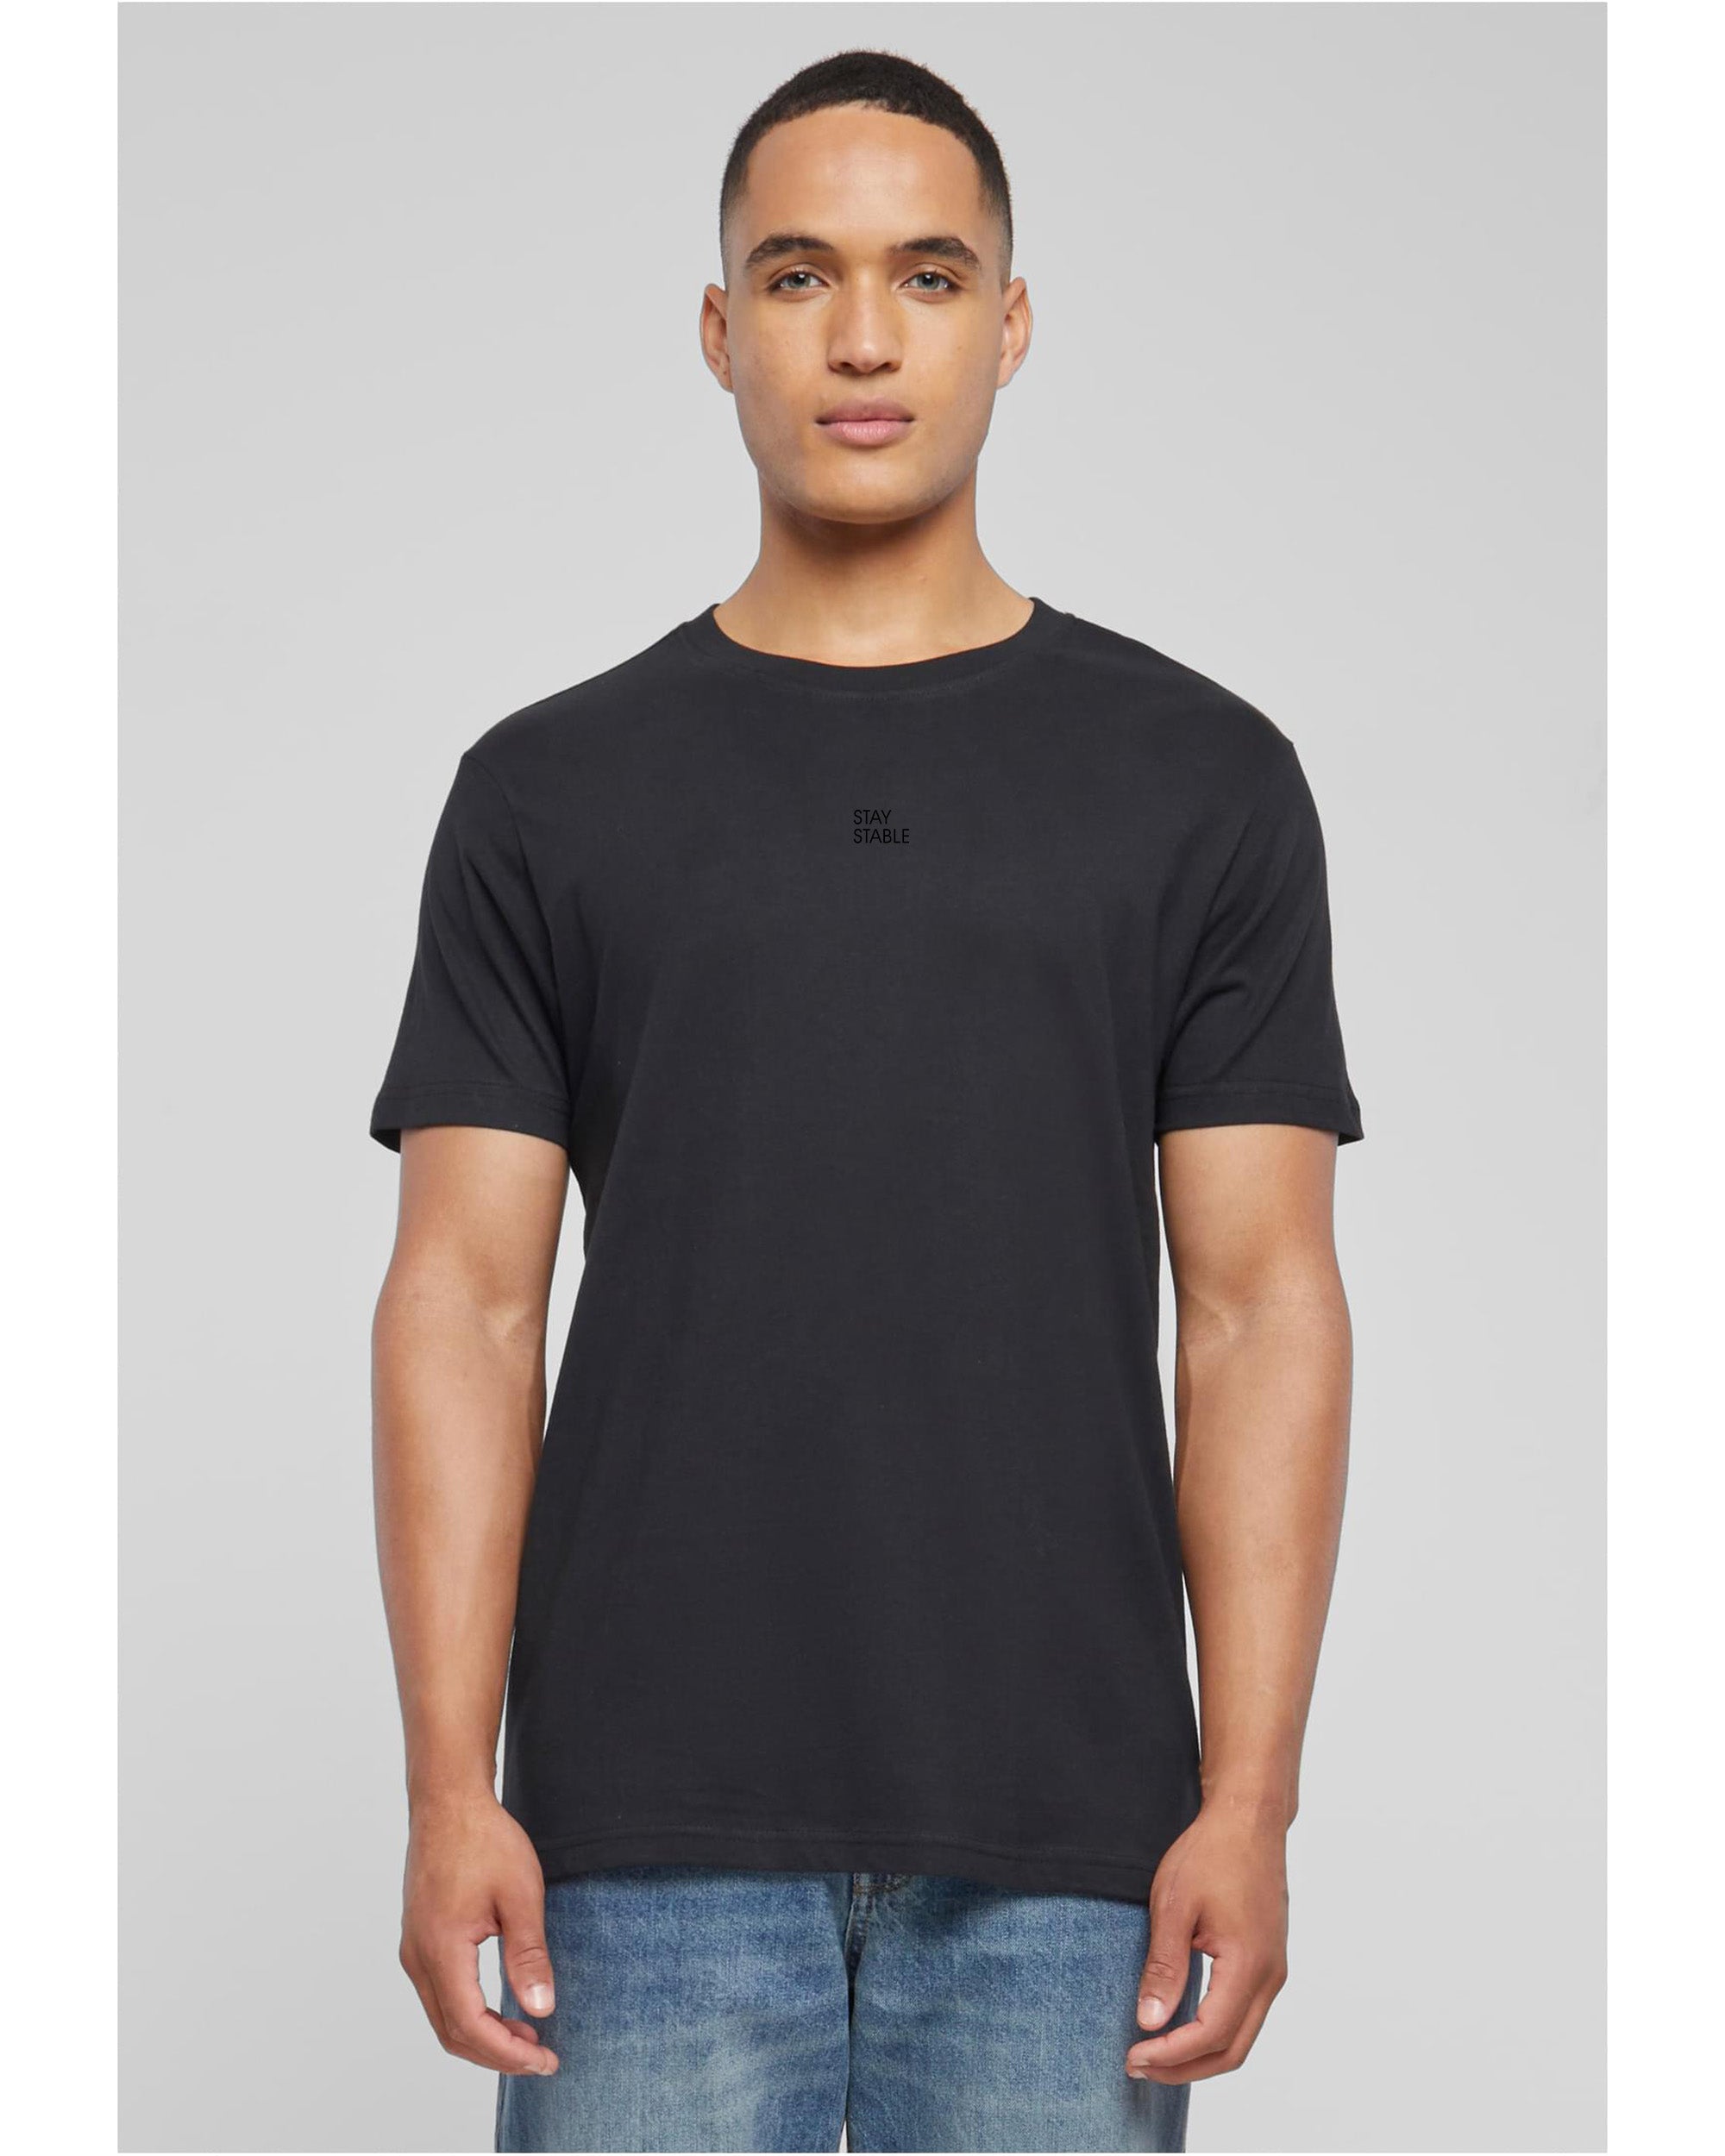 Person mit schwarzem basic T-Shirt bekleidet von vorne mit schwarzem Stay Stable Print mittig auf der Brust